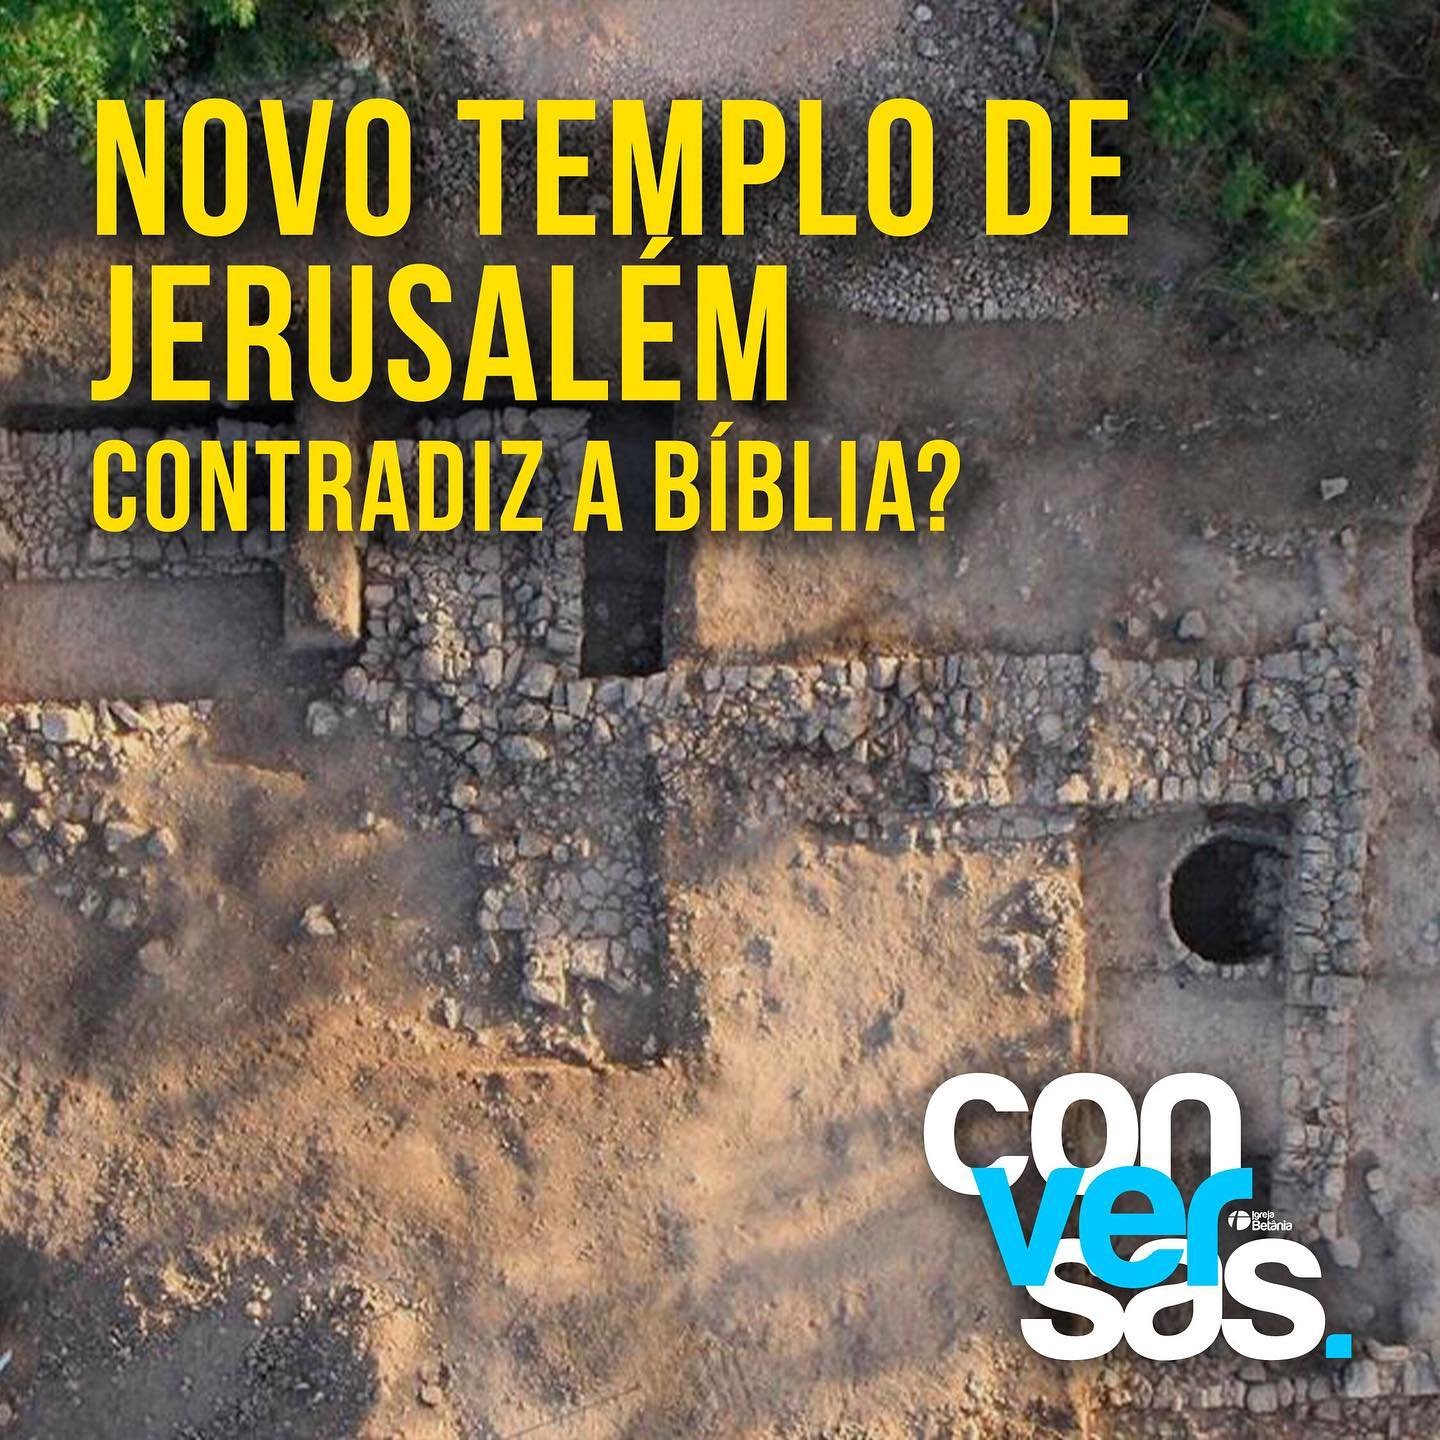 Você está visualizando atualmente Templo de Tel Motza Contradiz a Bíblia?